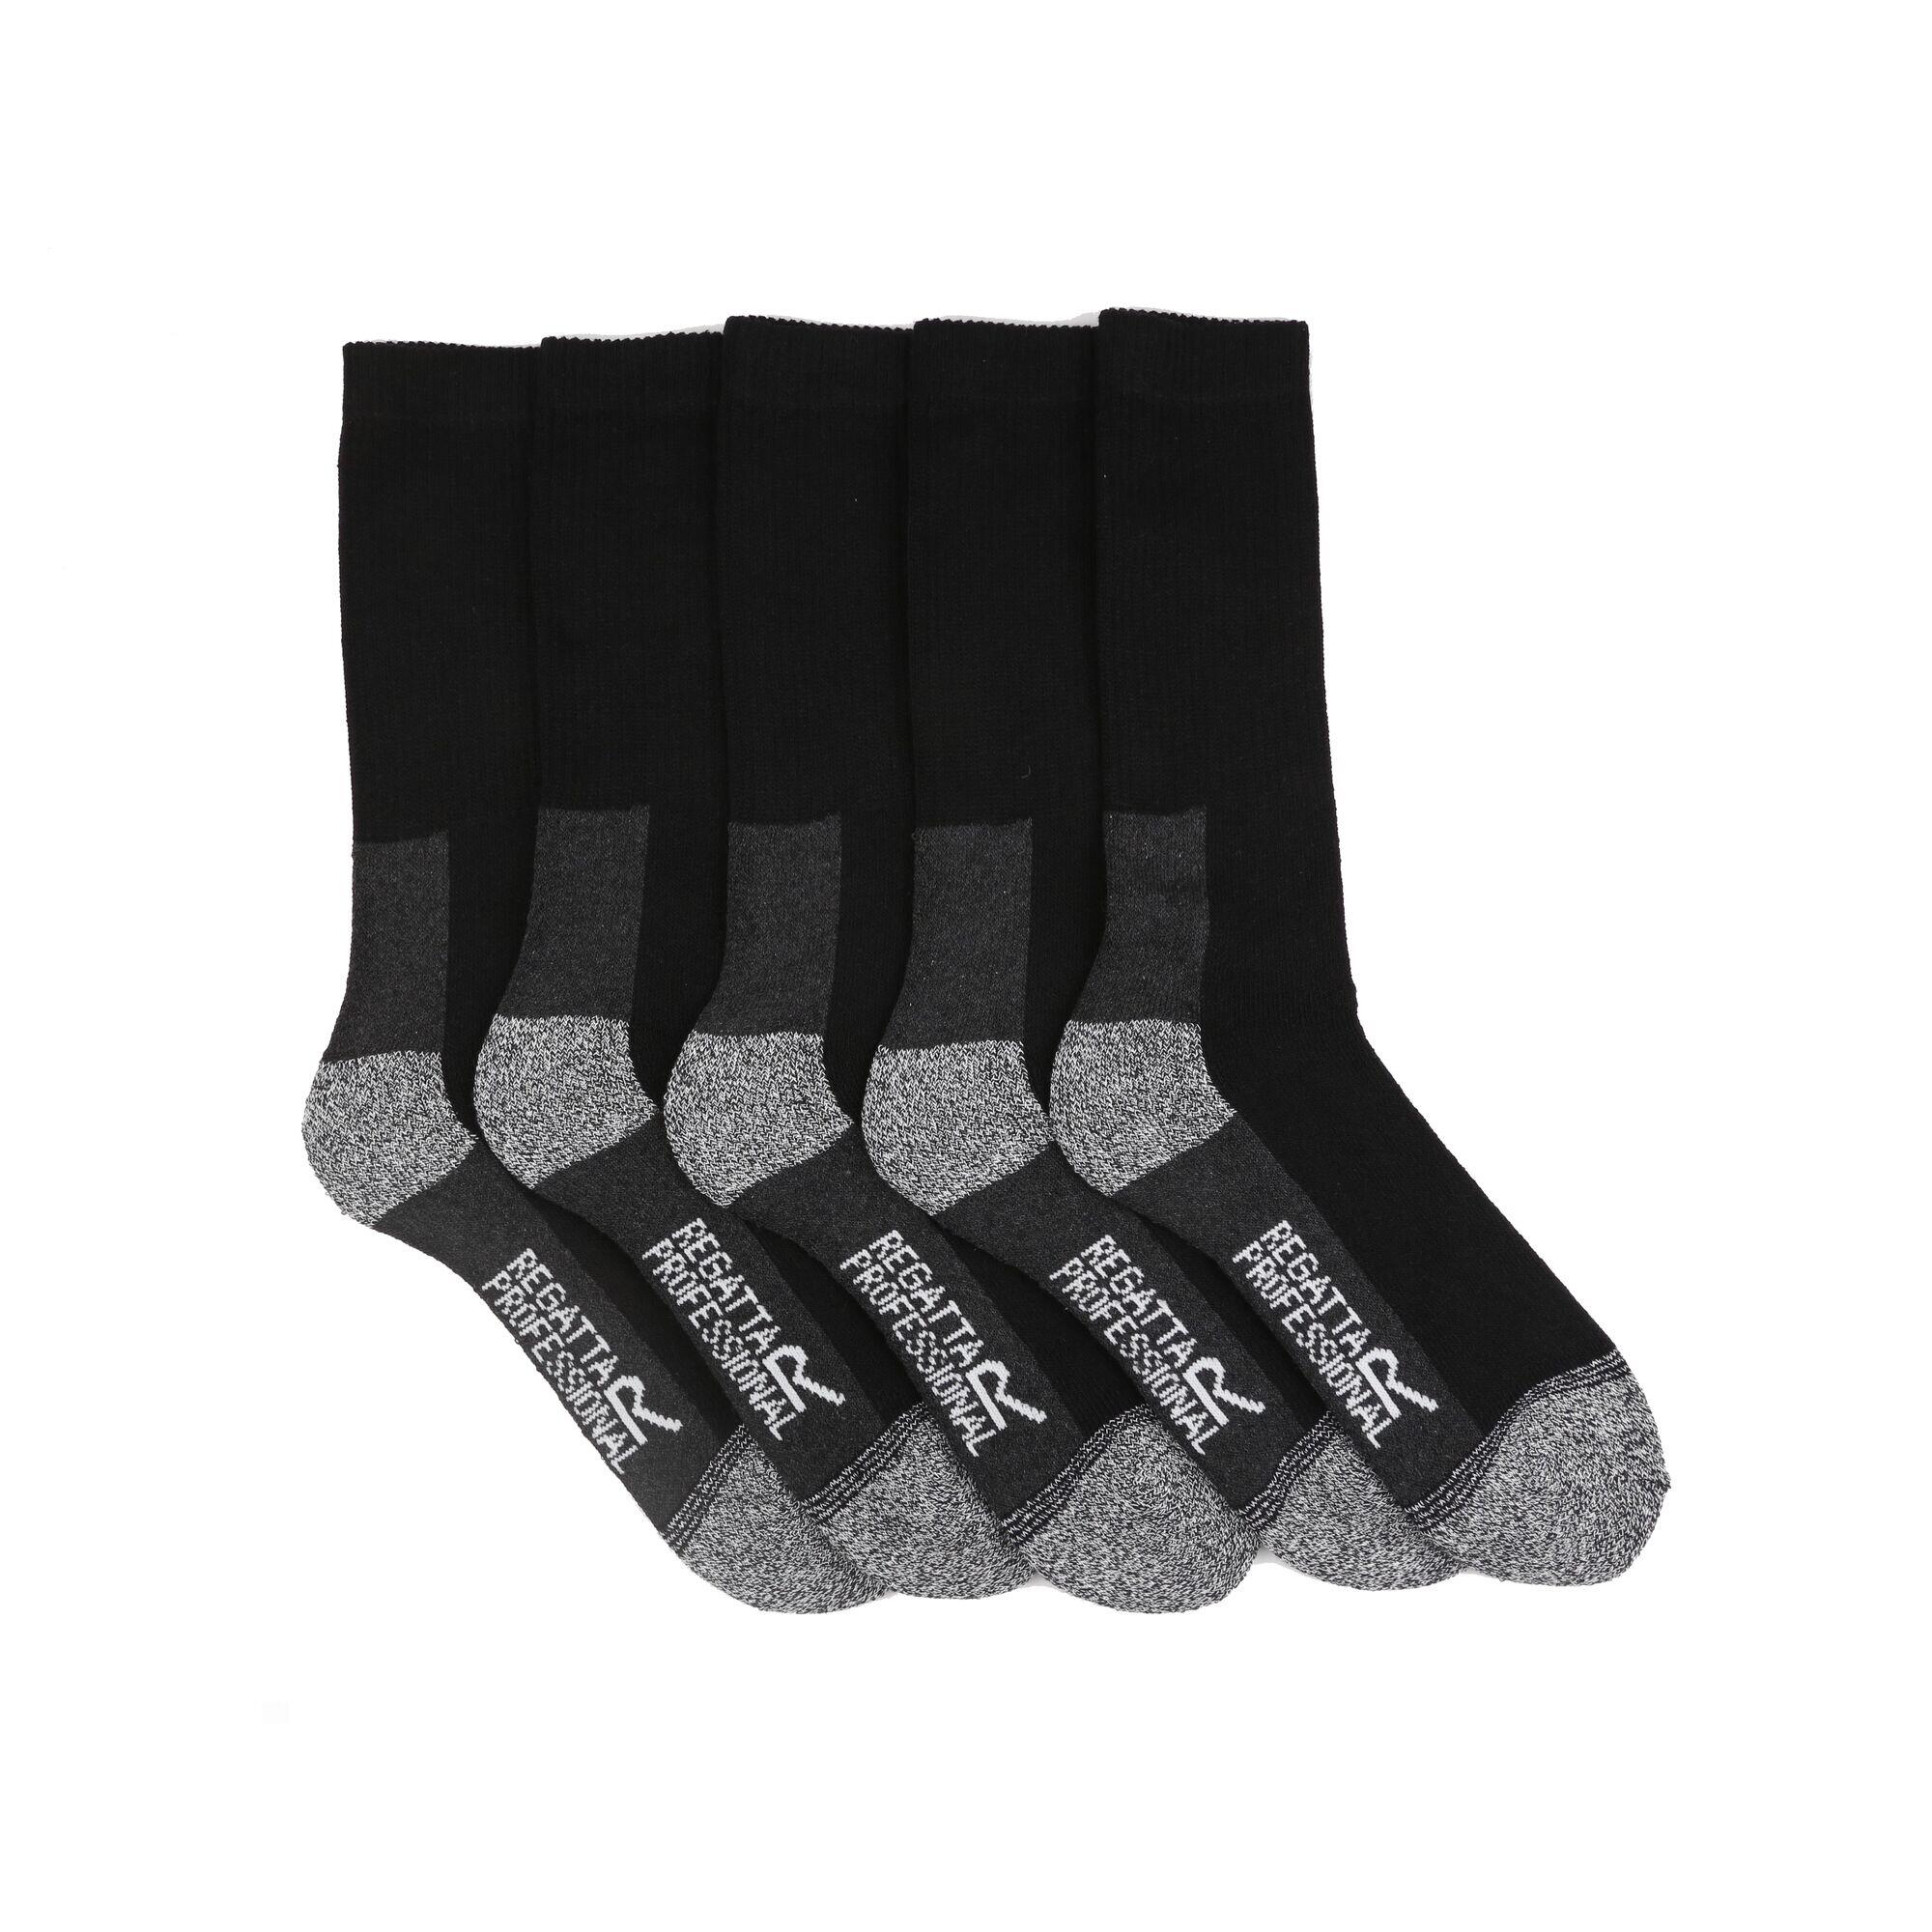 Mens Boot Socks (Pack of 5) (Black) 1/4